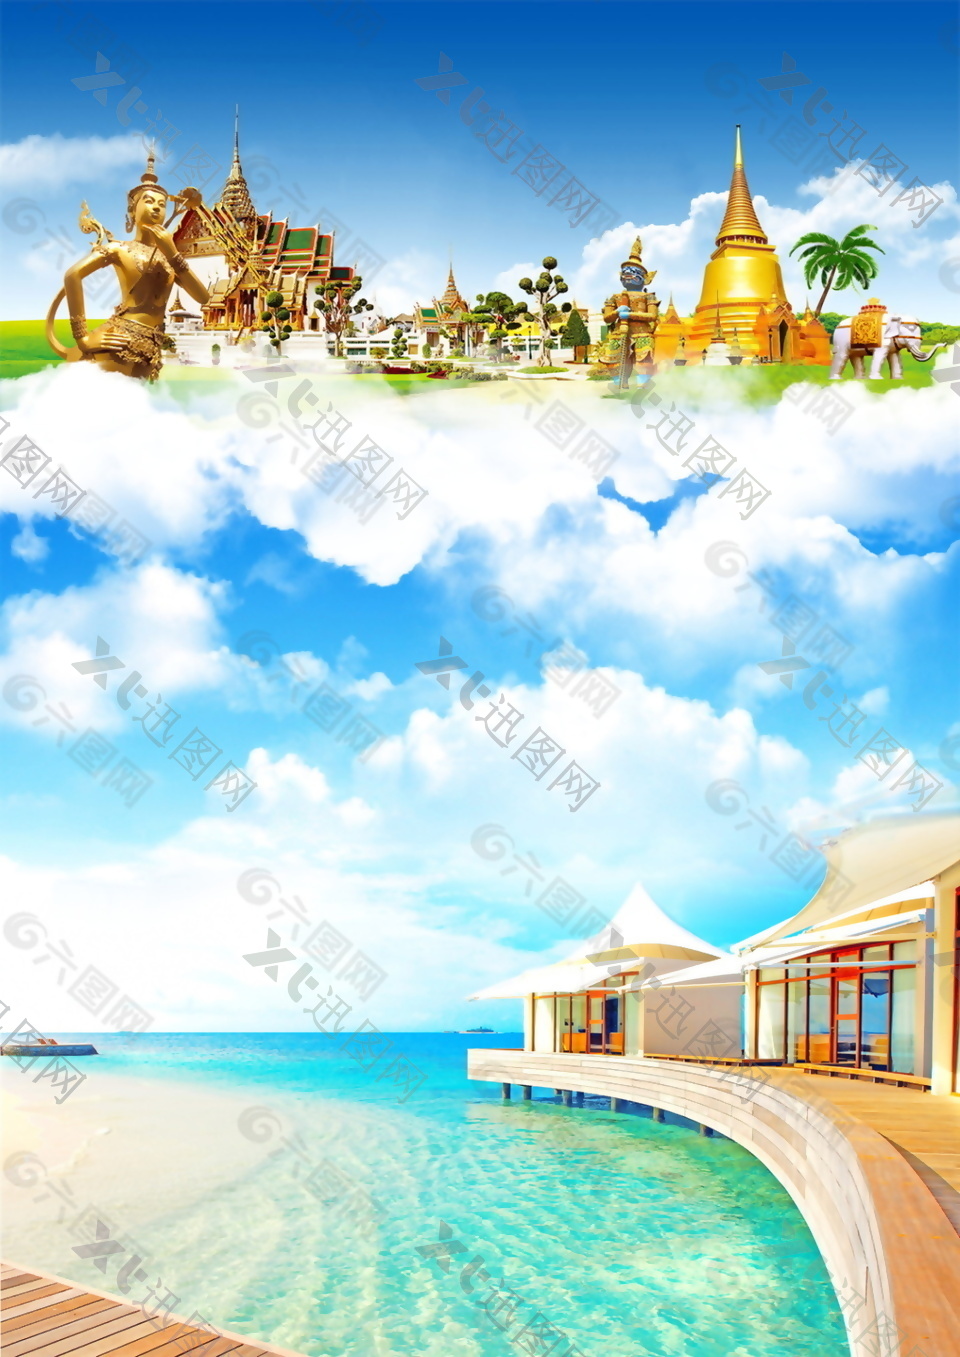 泰国印象旅游海报背景设计